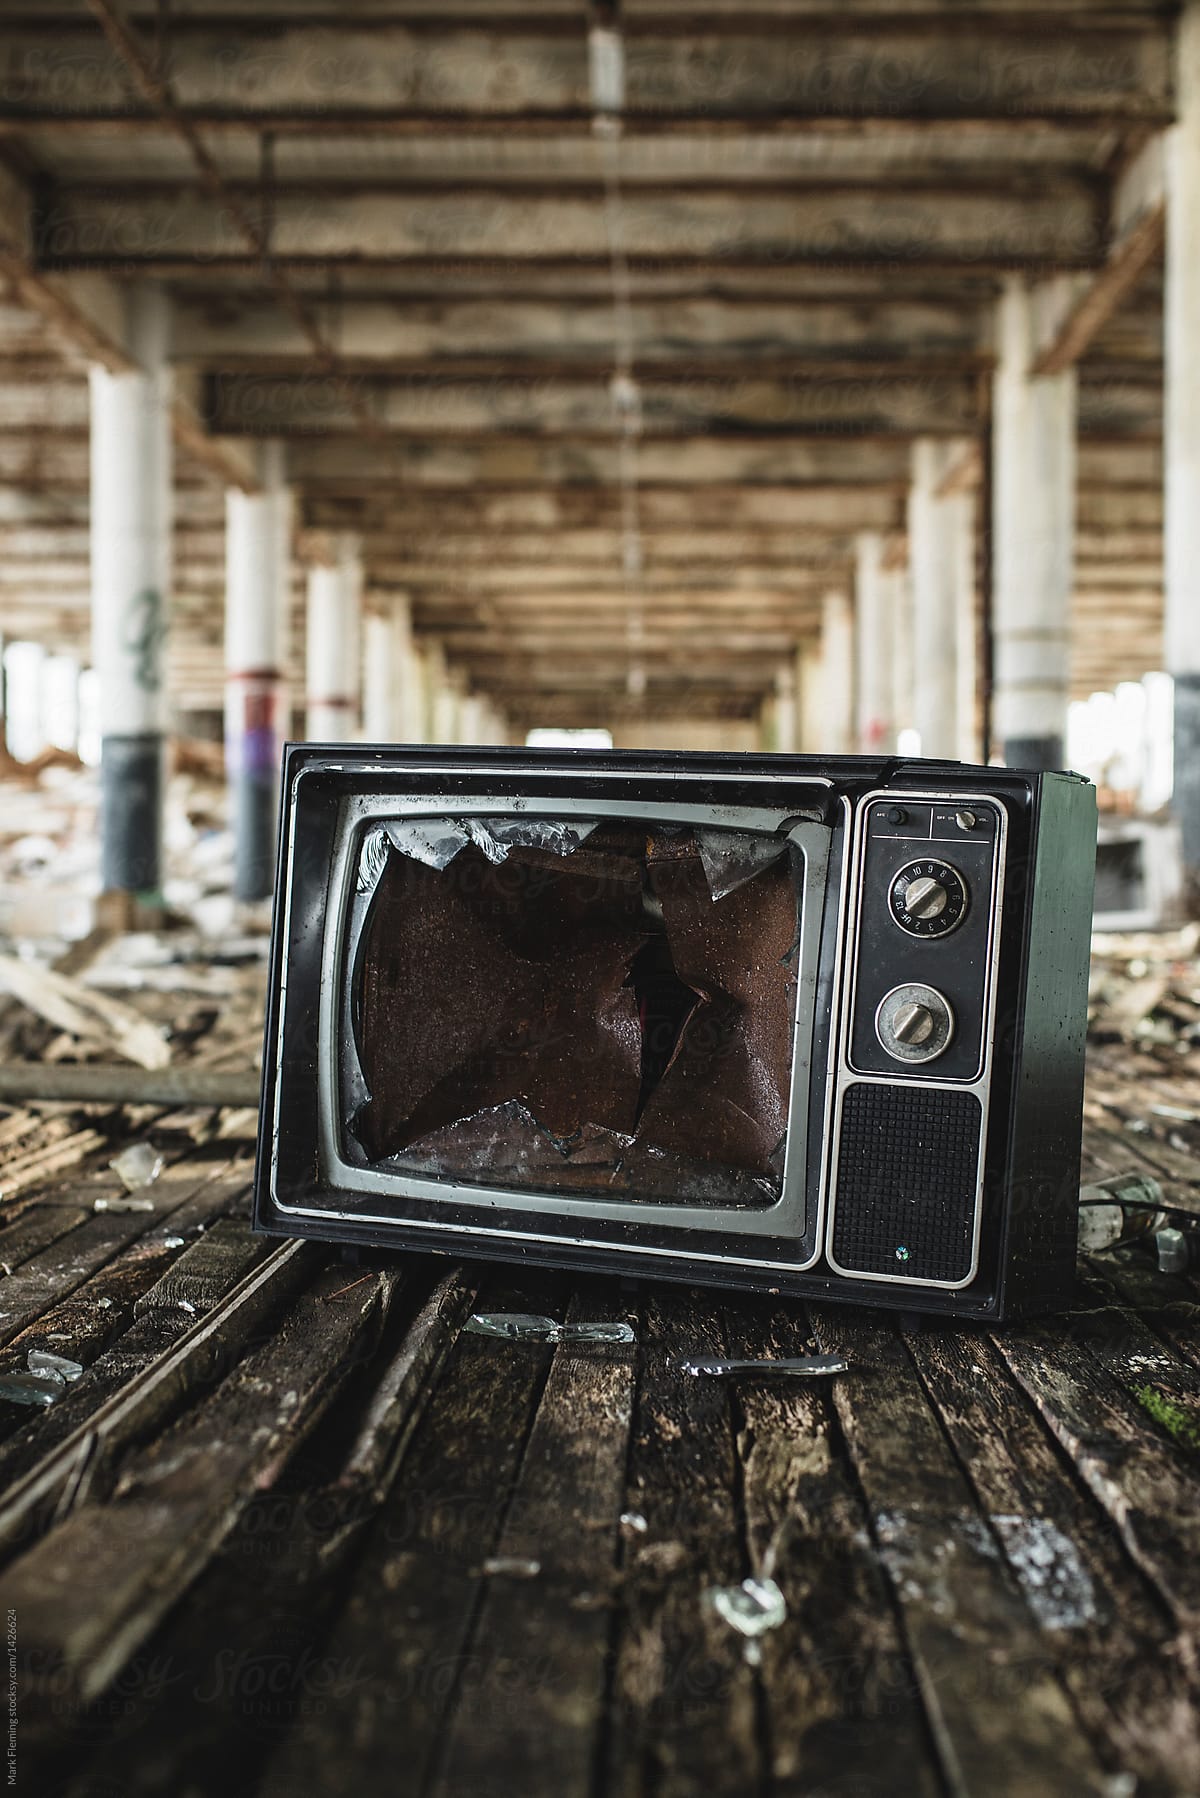 Broken TV in abandoned building